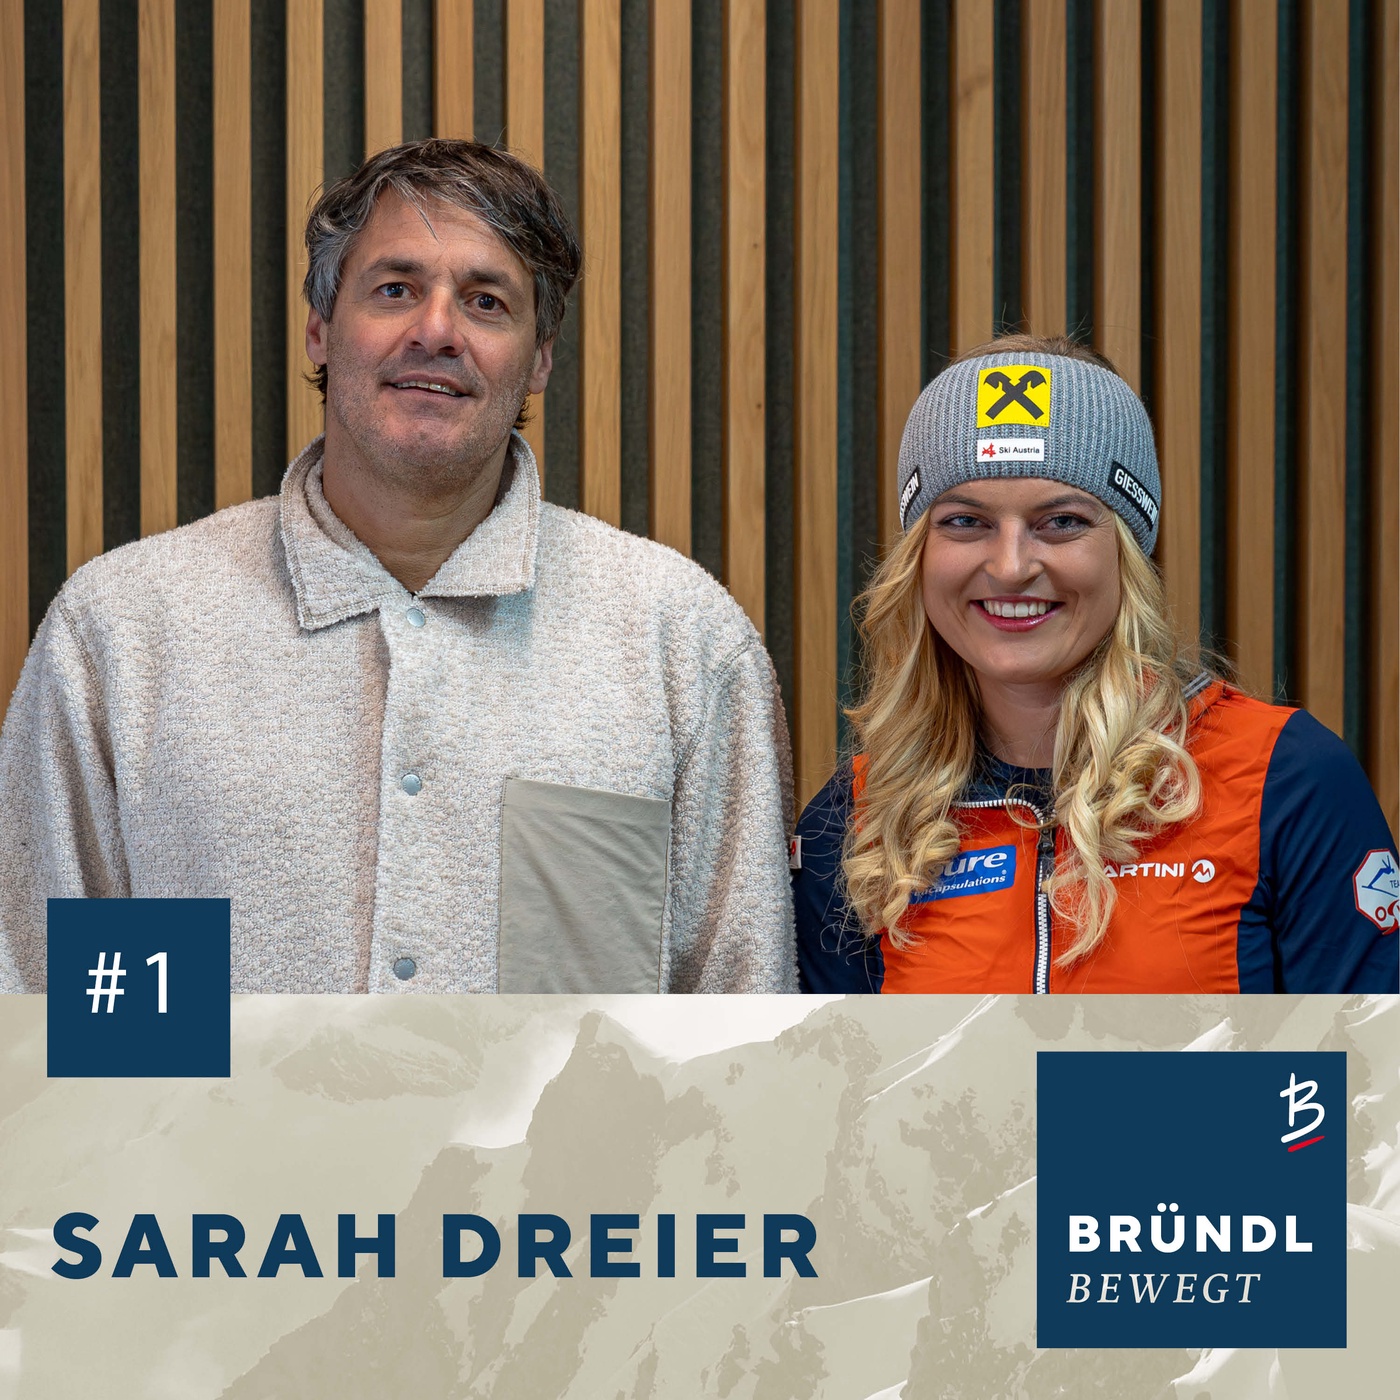 Magicmoments #1 - Sarah Dreier - Erfolgreichste österreichische Skibergsteigerin